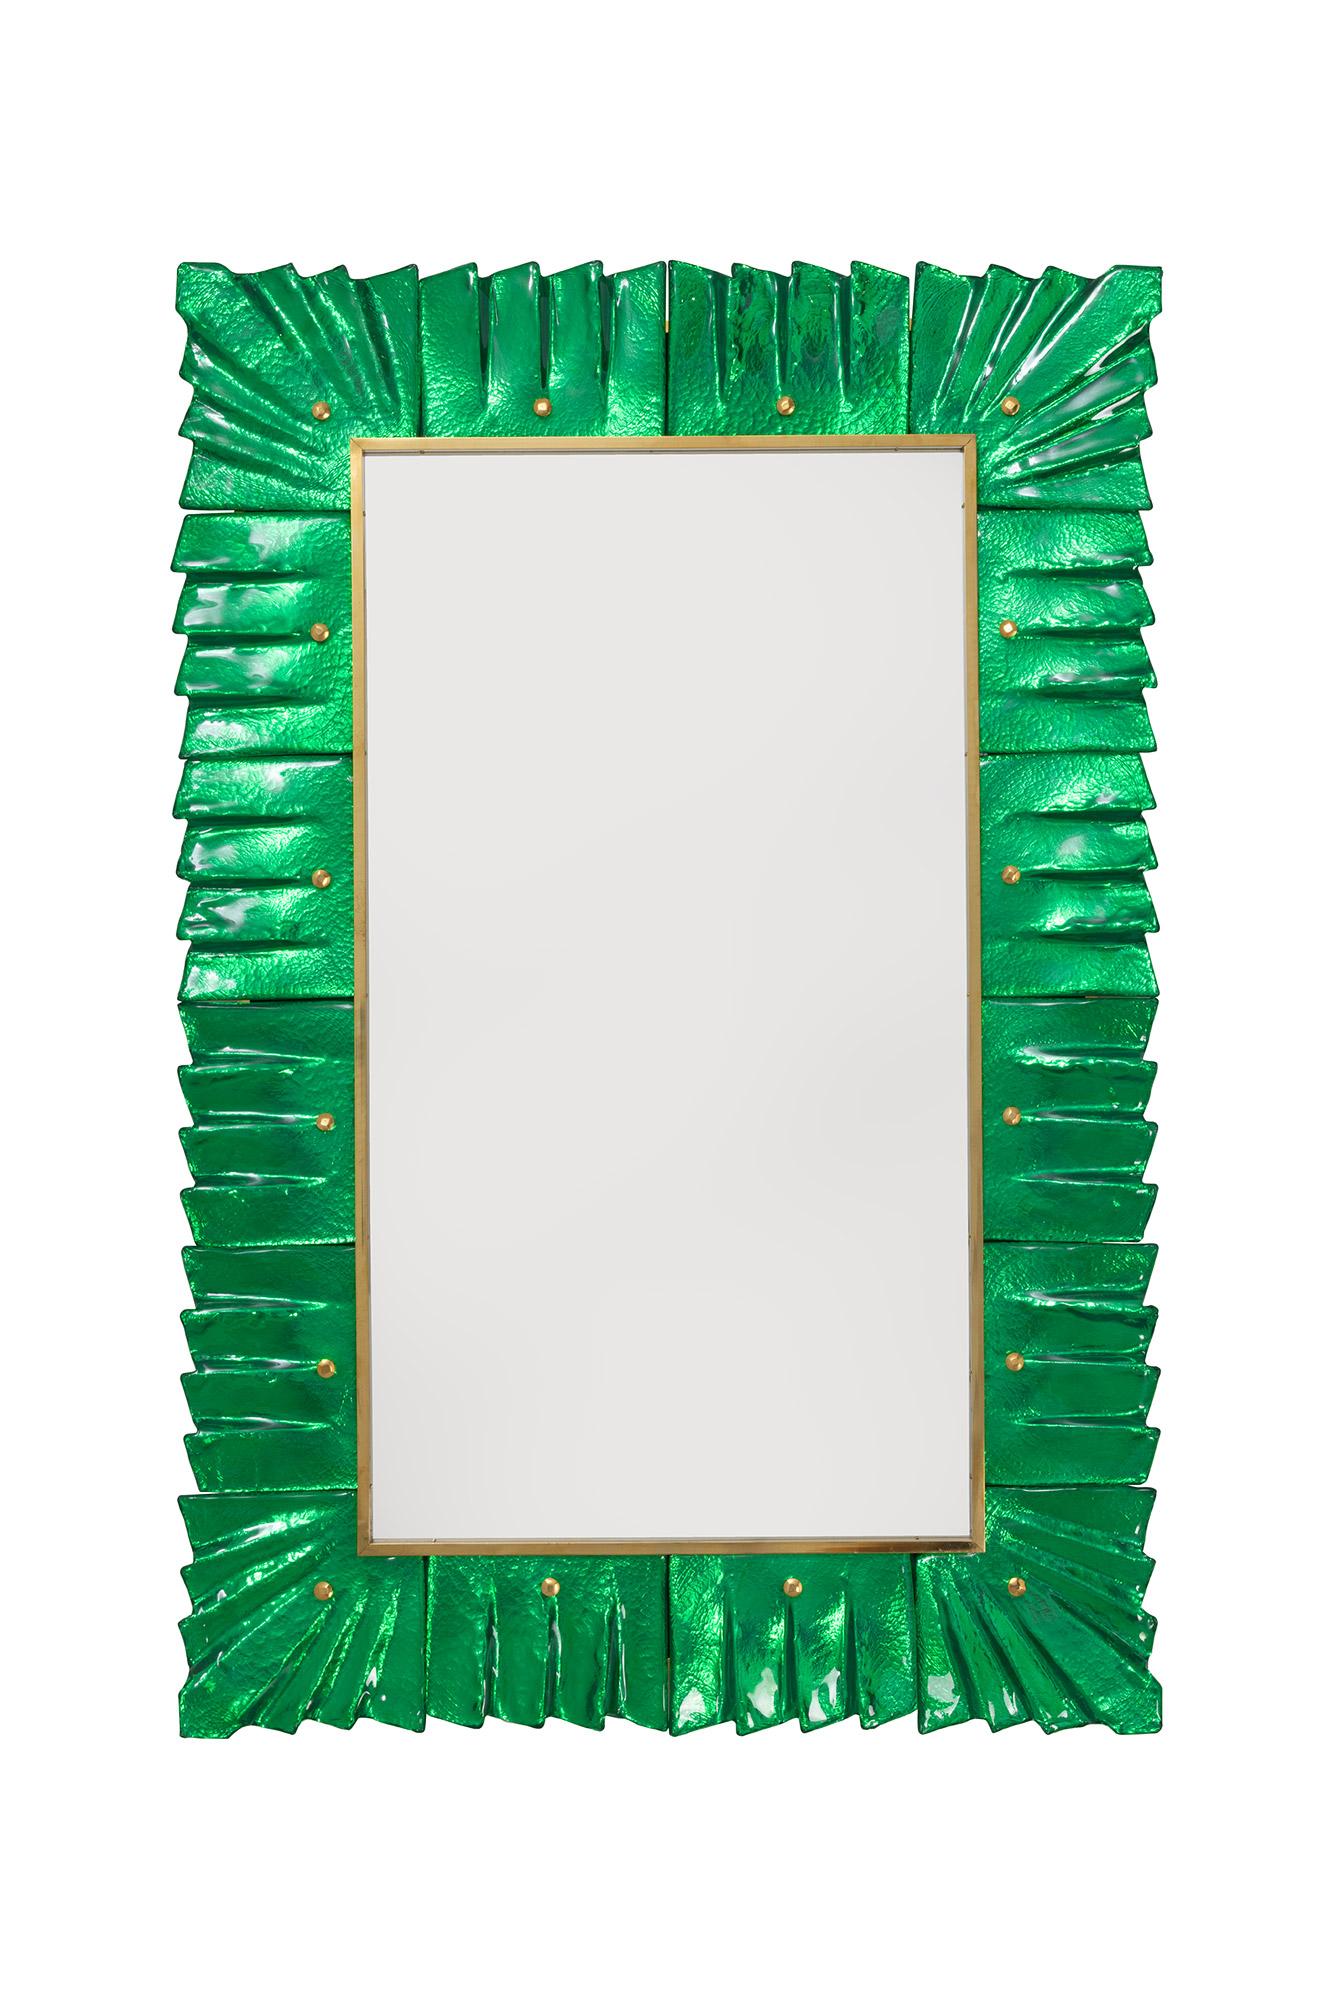 Paar smaragdgrüne Spiegel aus Murano-Glas, auf Lager.
Rechteckige Spiegelplatte, umgeben von wellenförmigen Glasfliesen in smaragdgrüner Farbe, gehalten von Messing-Cabochons. 
Handgefertigt von einem Team von Kunsthandwerkern in Venedig, Italien.